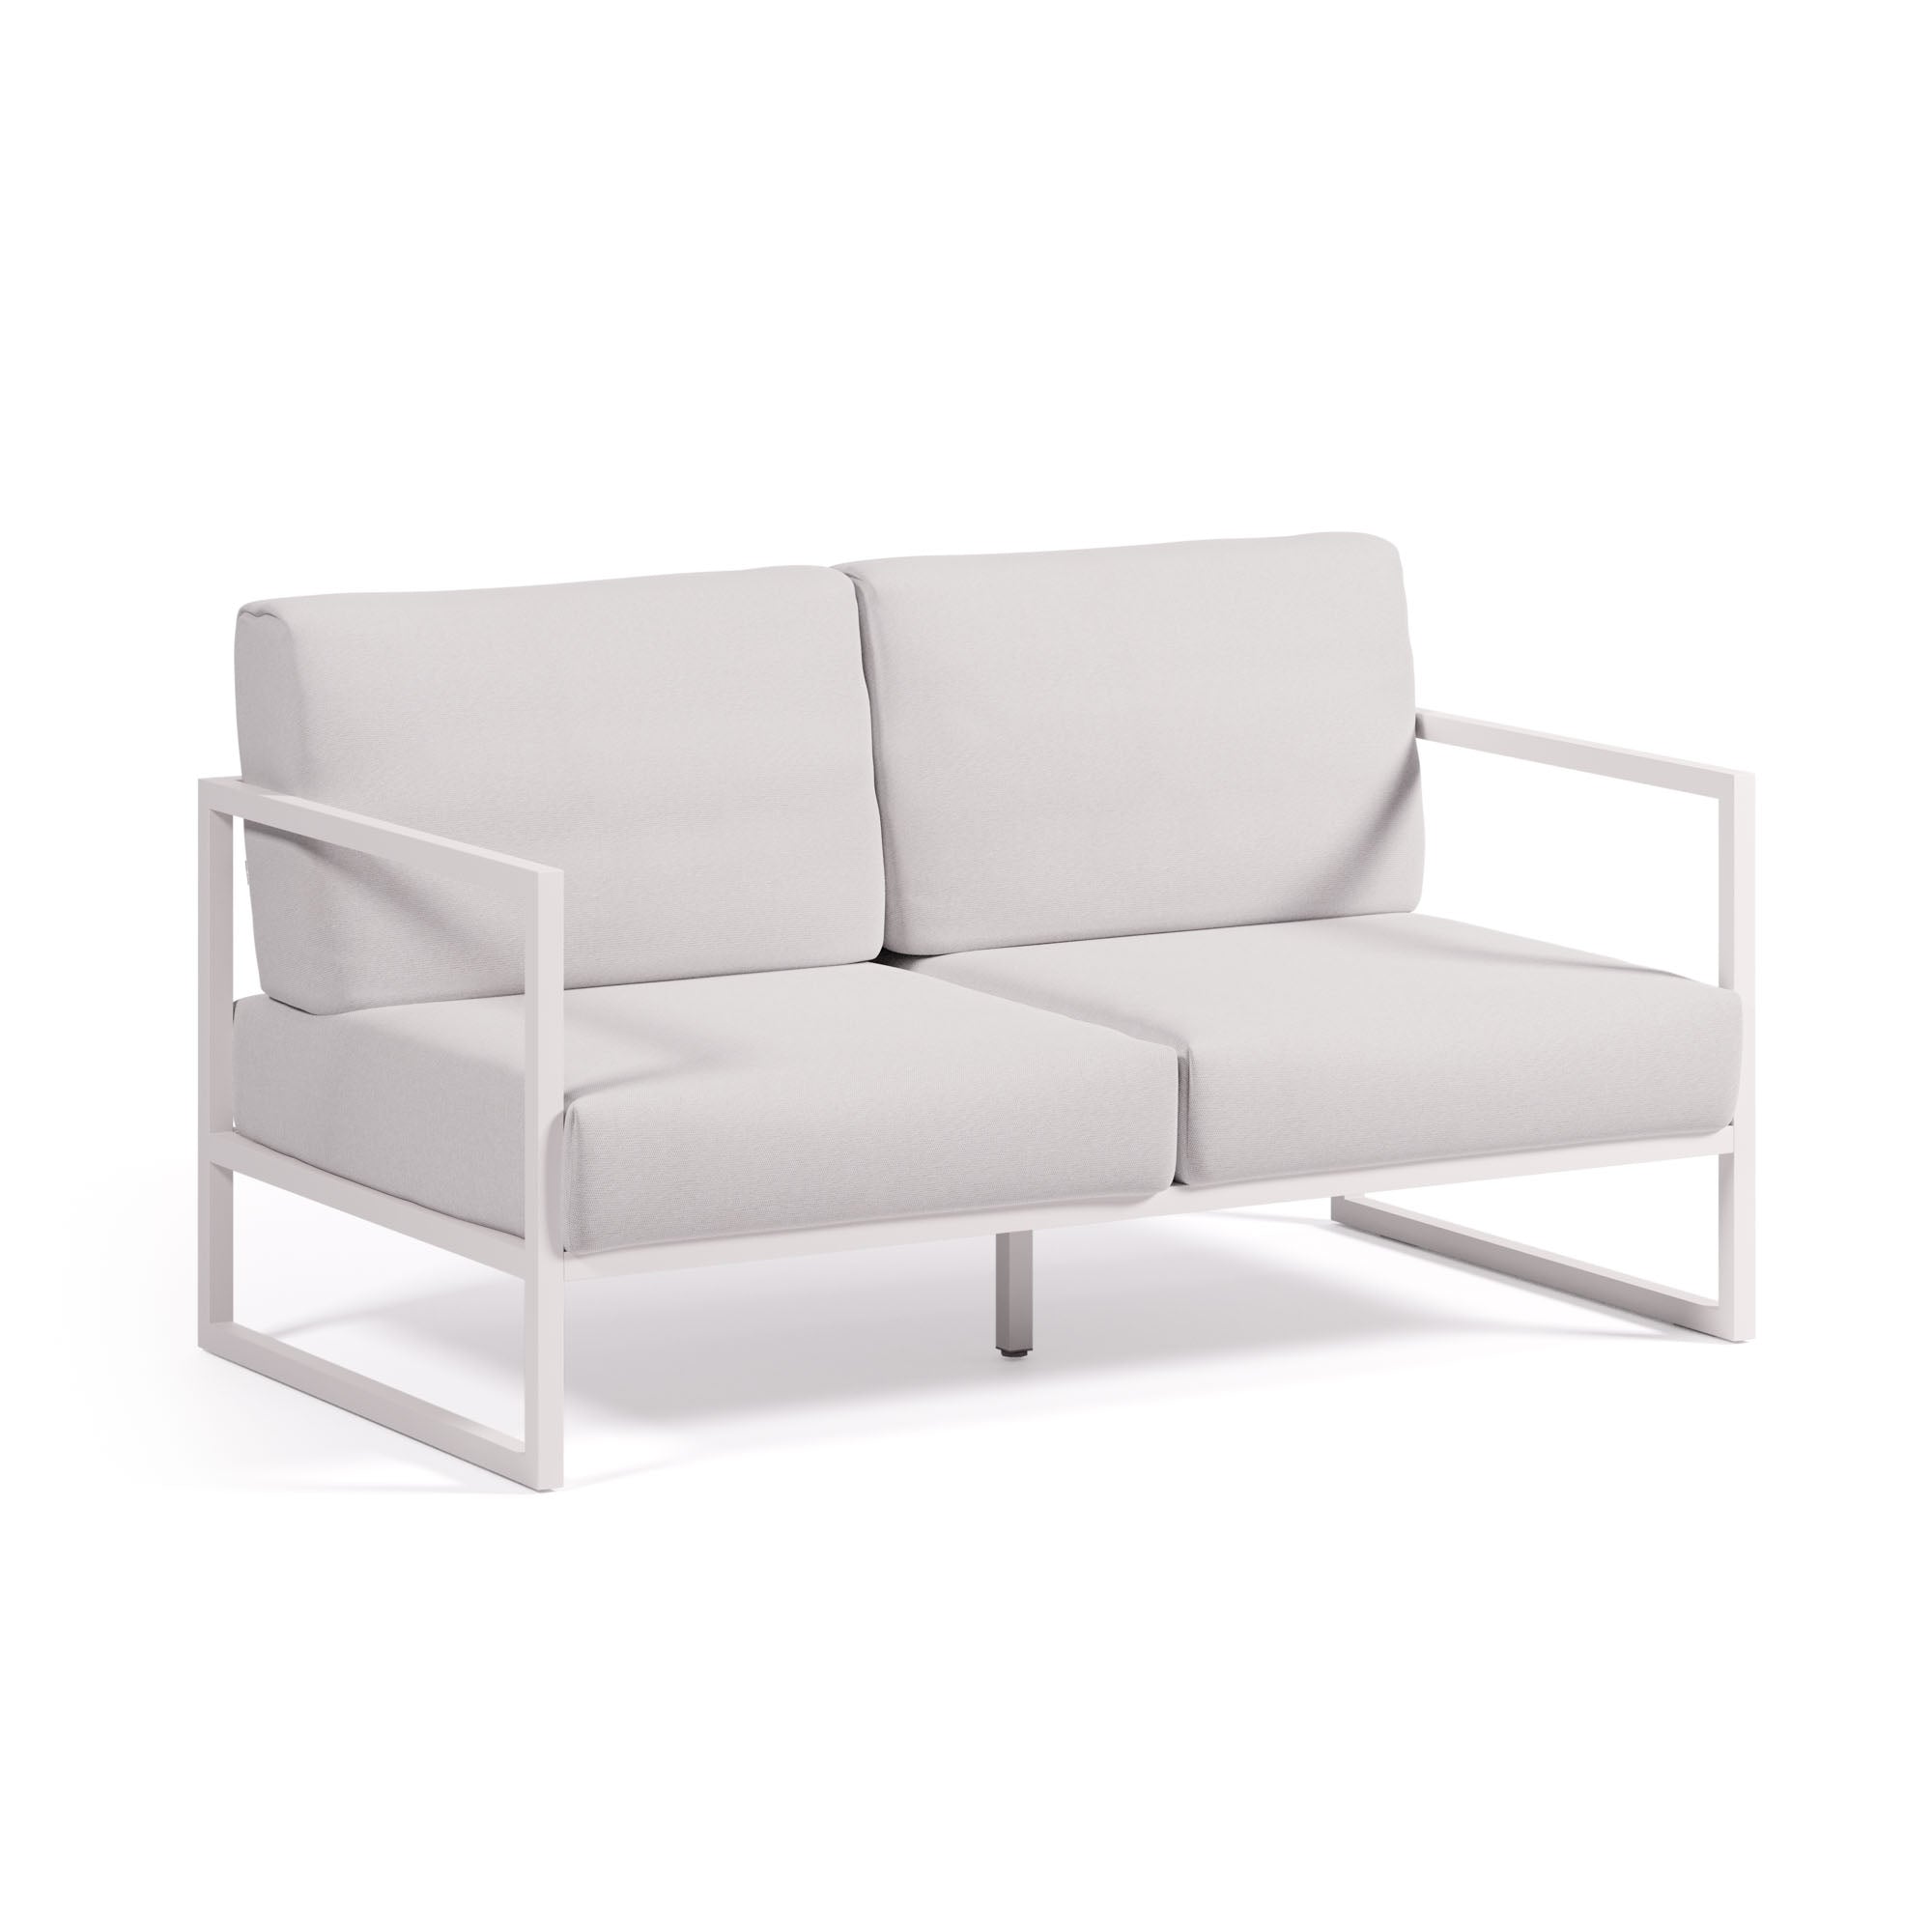 Comova 100% kültéri 2 személyes kanapé, fehér és fehér alumínium, 150 cm